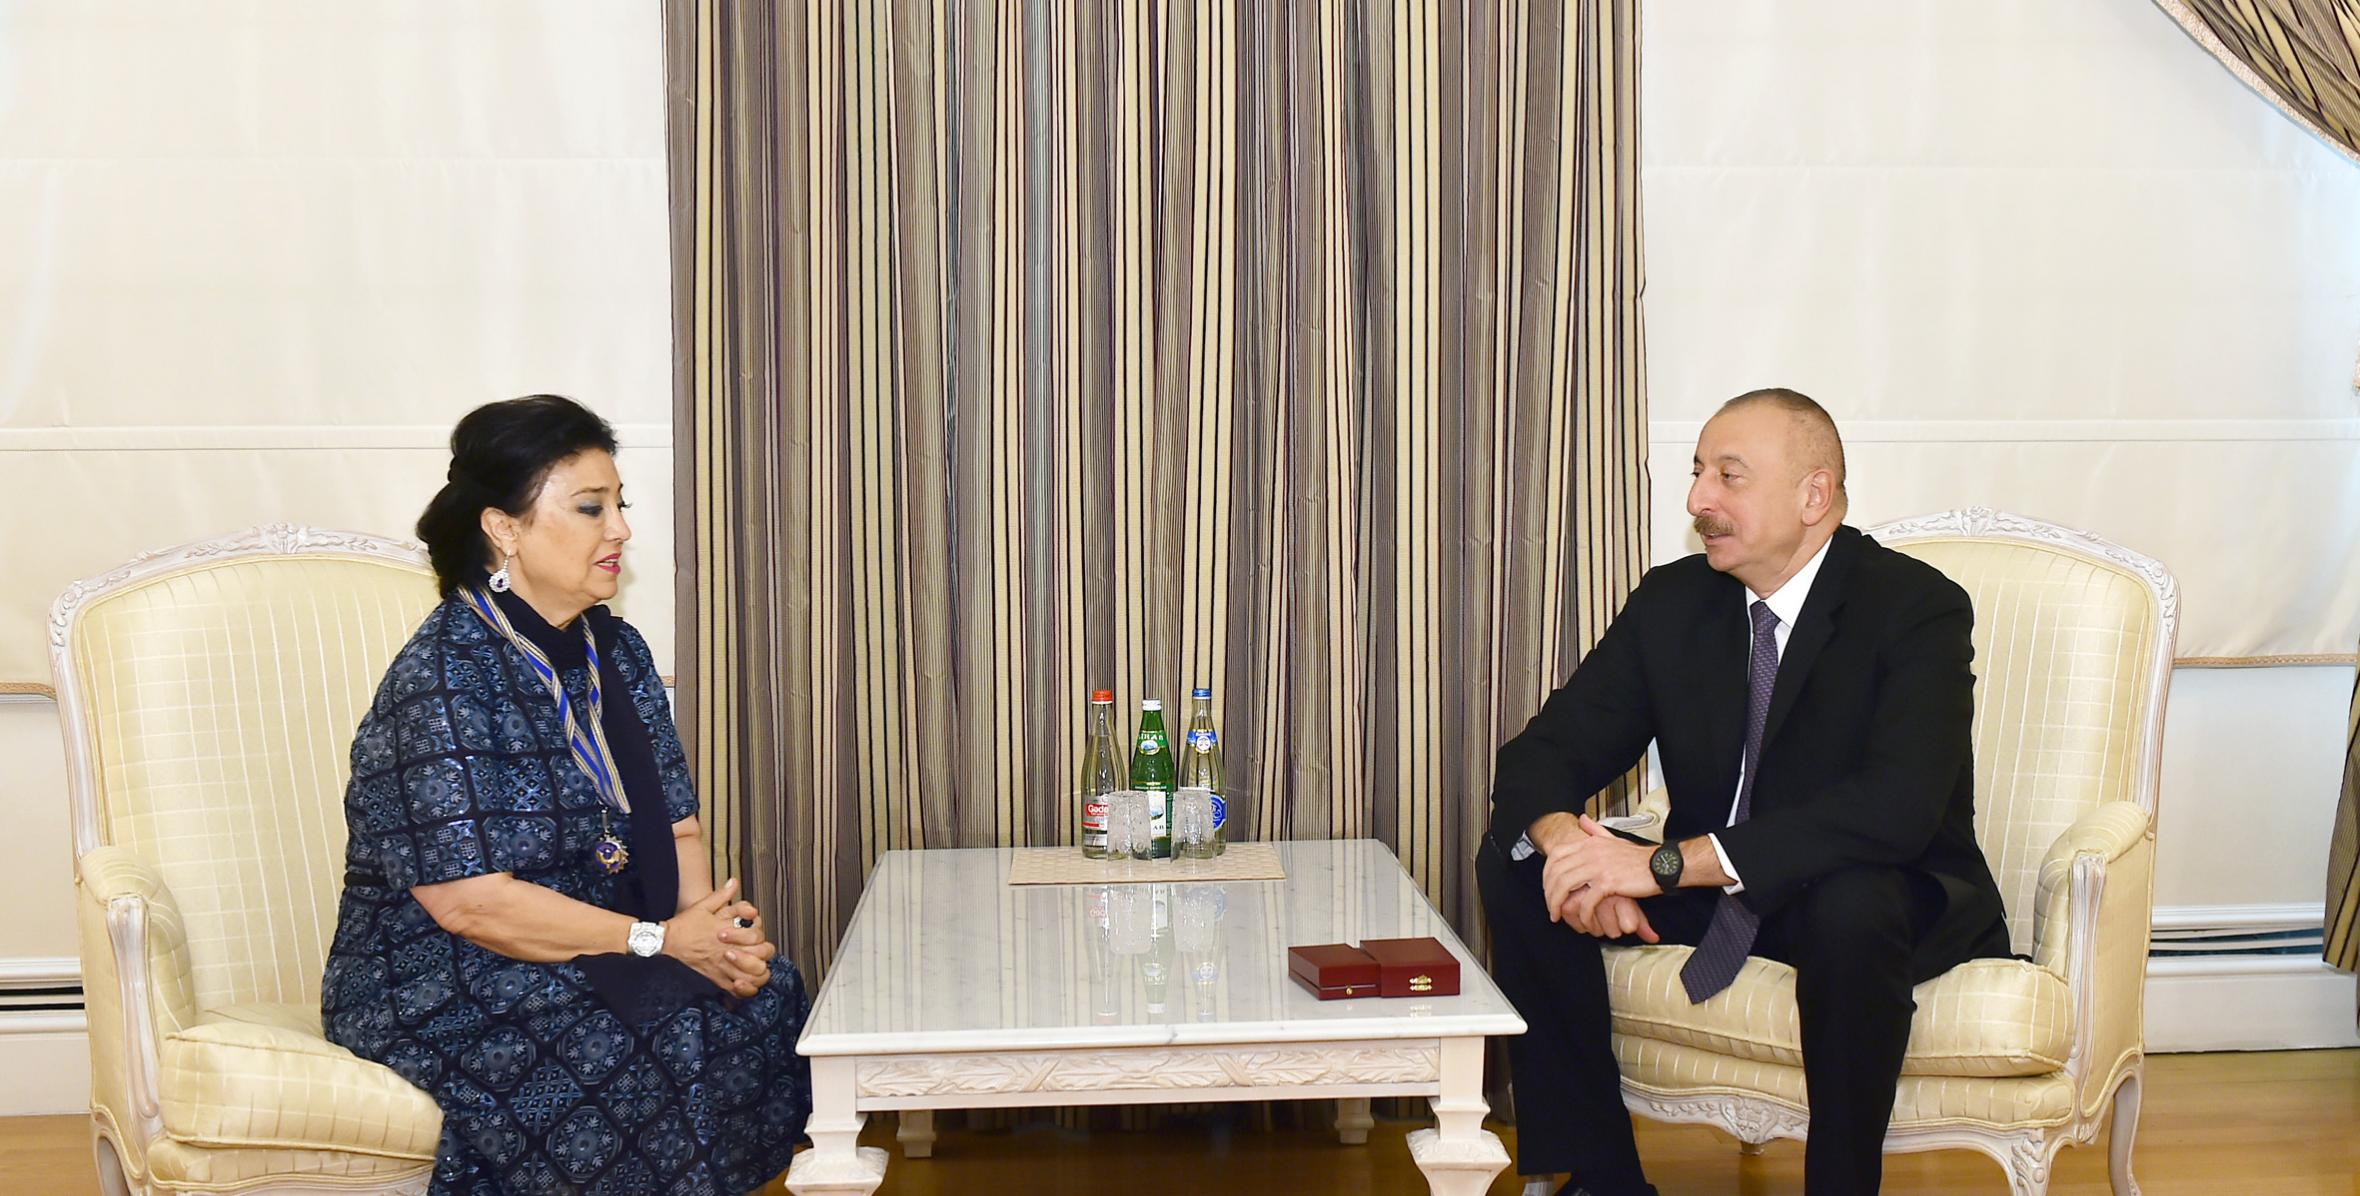 Ильхам Алиев наградил Фидан Касимову за особые заслуги в развитии азербайджанской музыкальной культуры орденом «Истиглал»